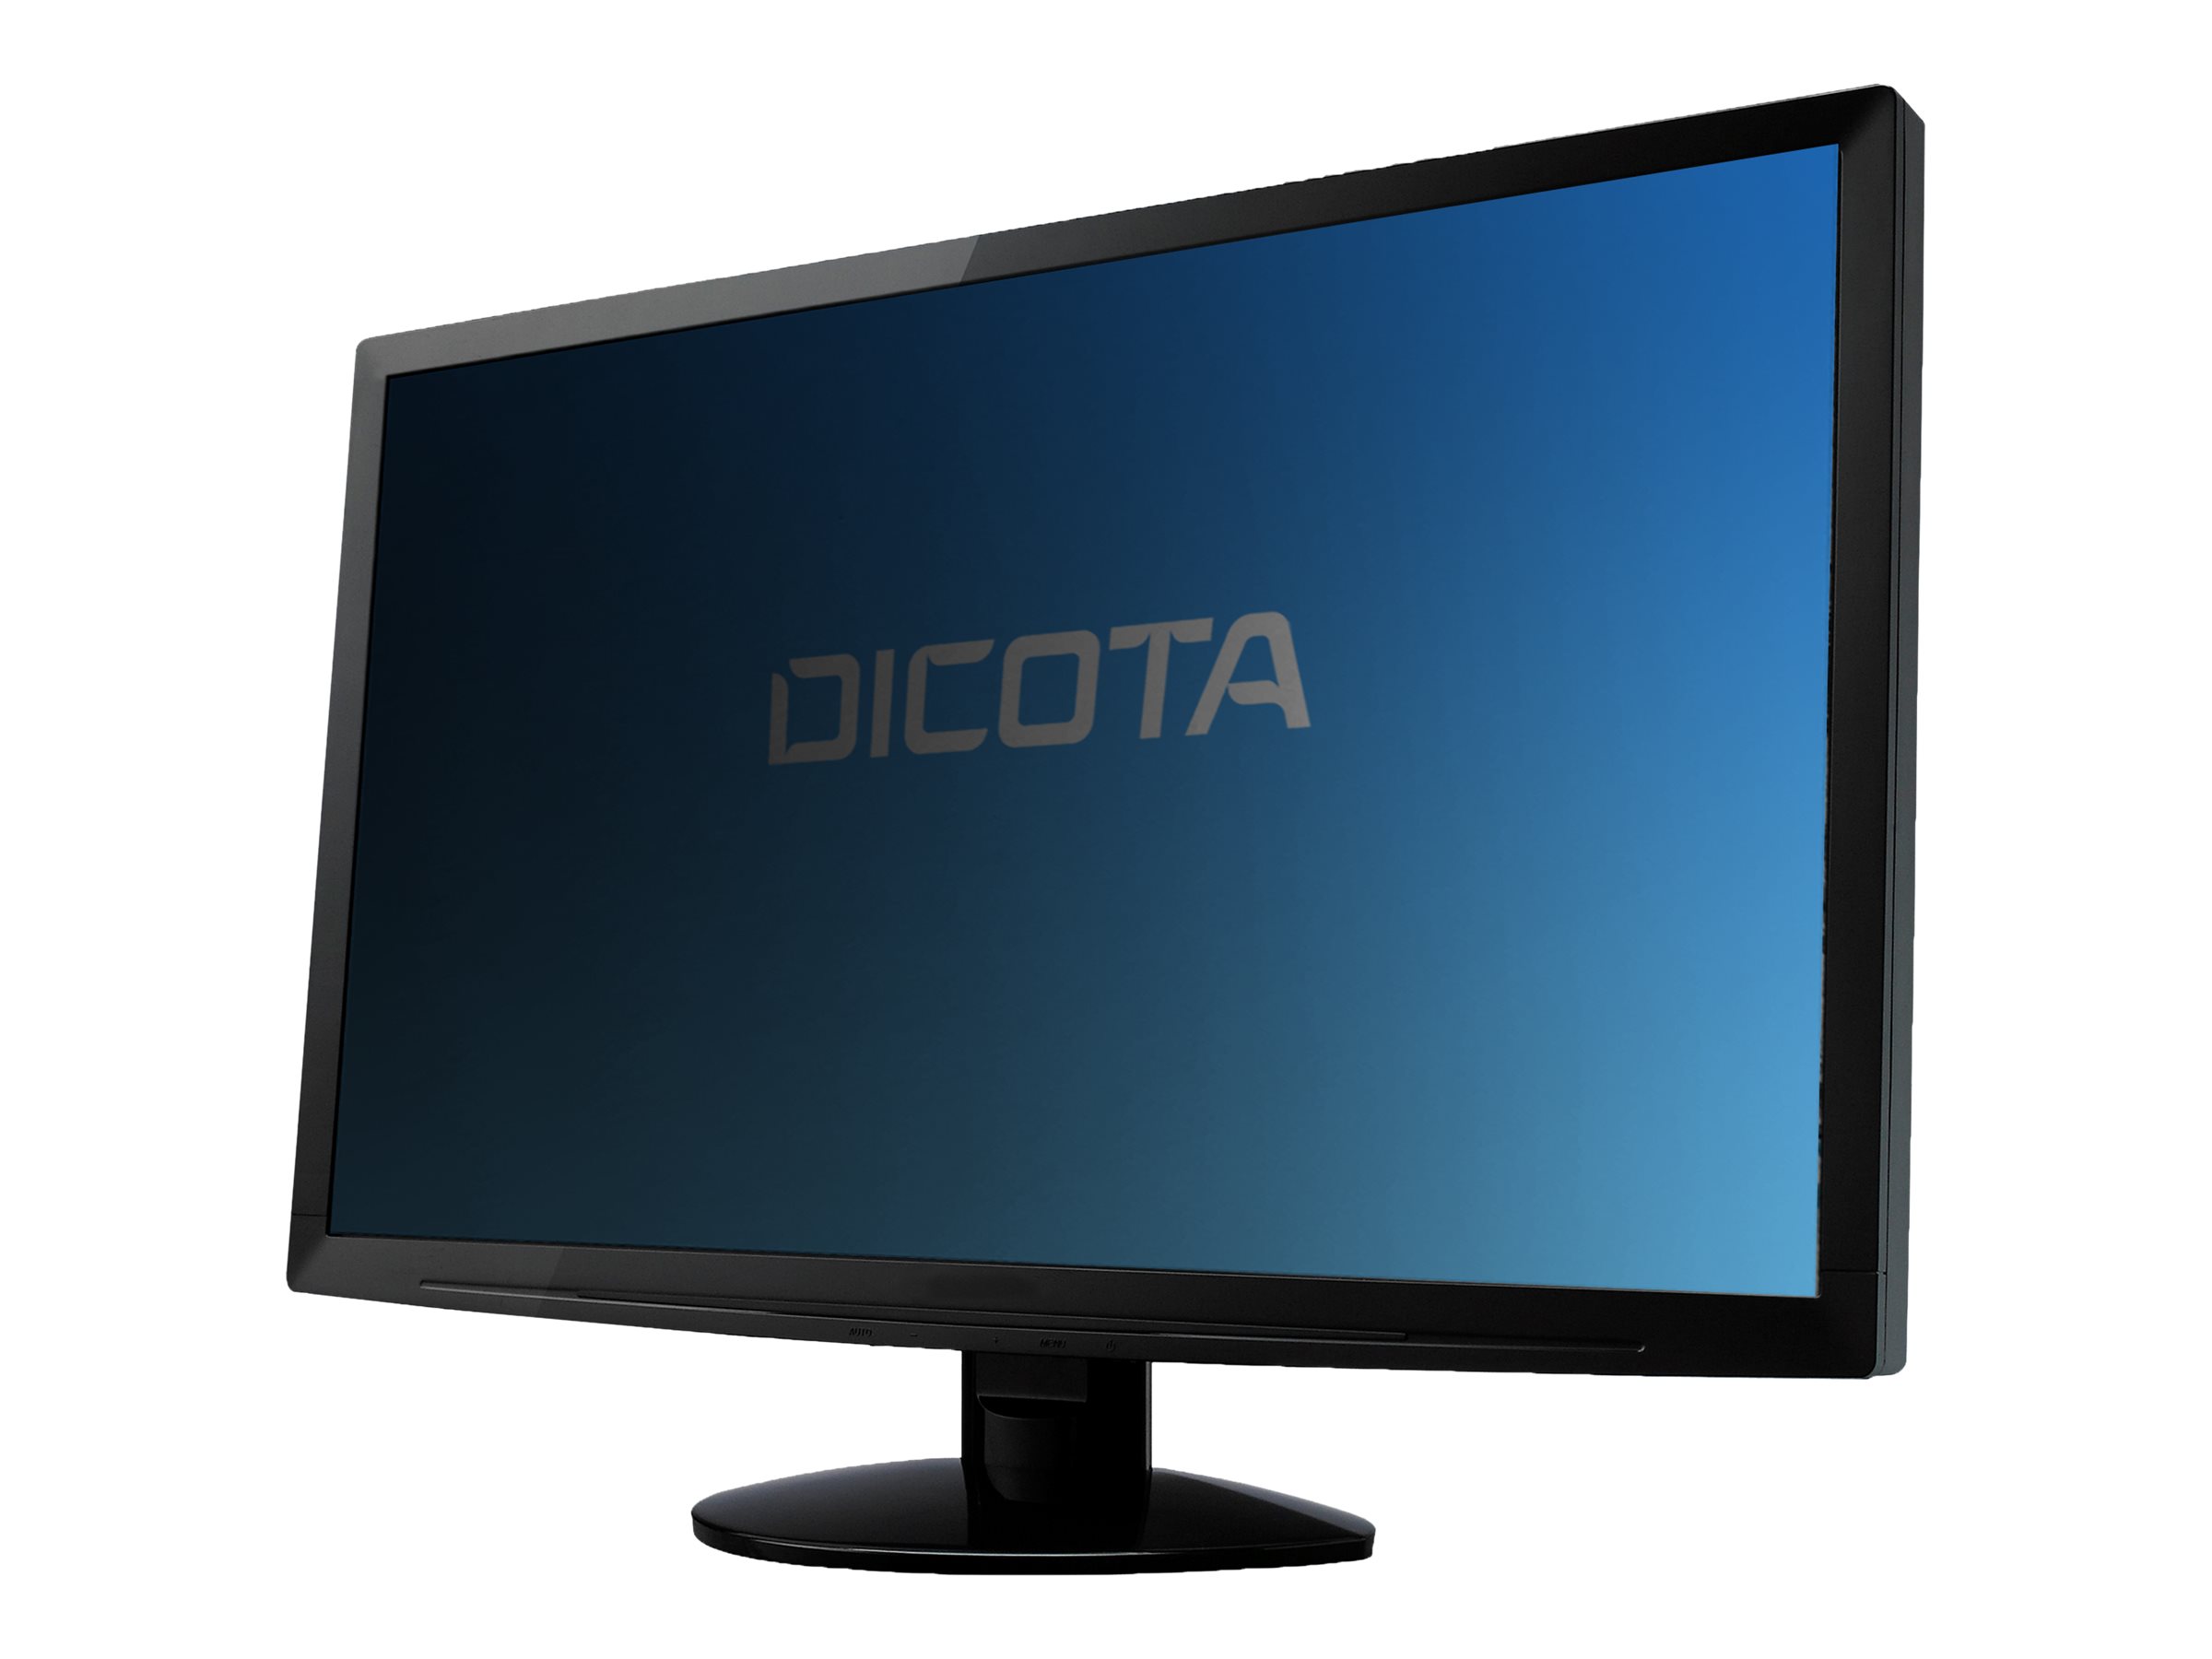 Dicota Secret - Blickschutzfilter fr Bildschirme - 2-Wege - 86.4 cm wide (34 Zoll Breitbild)